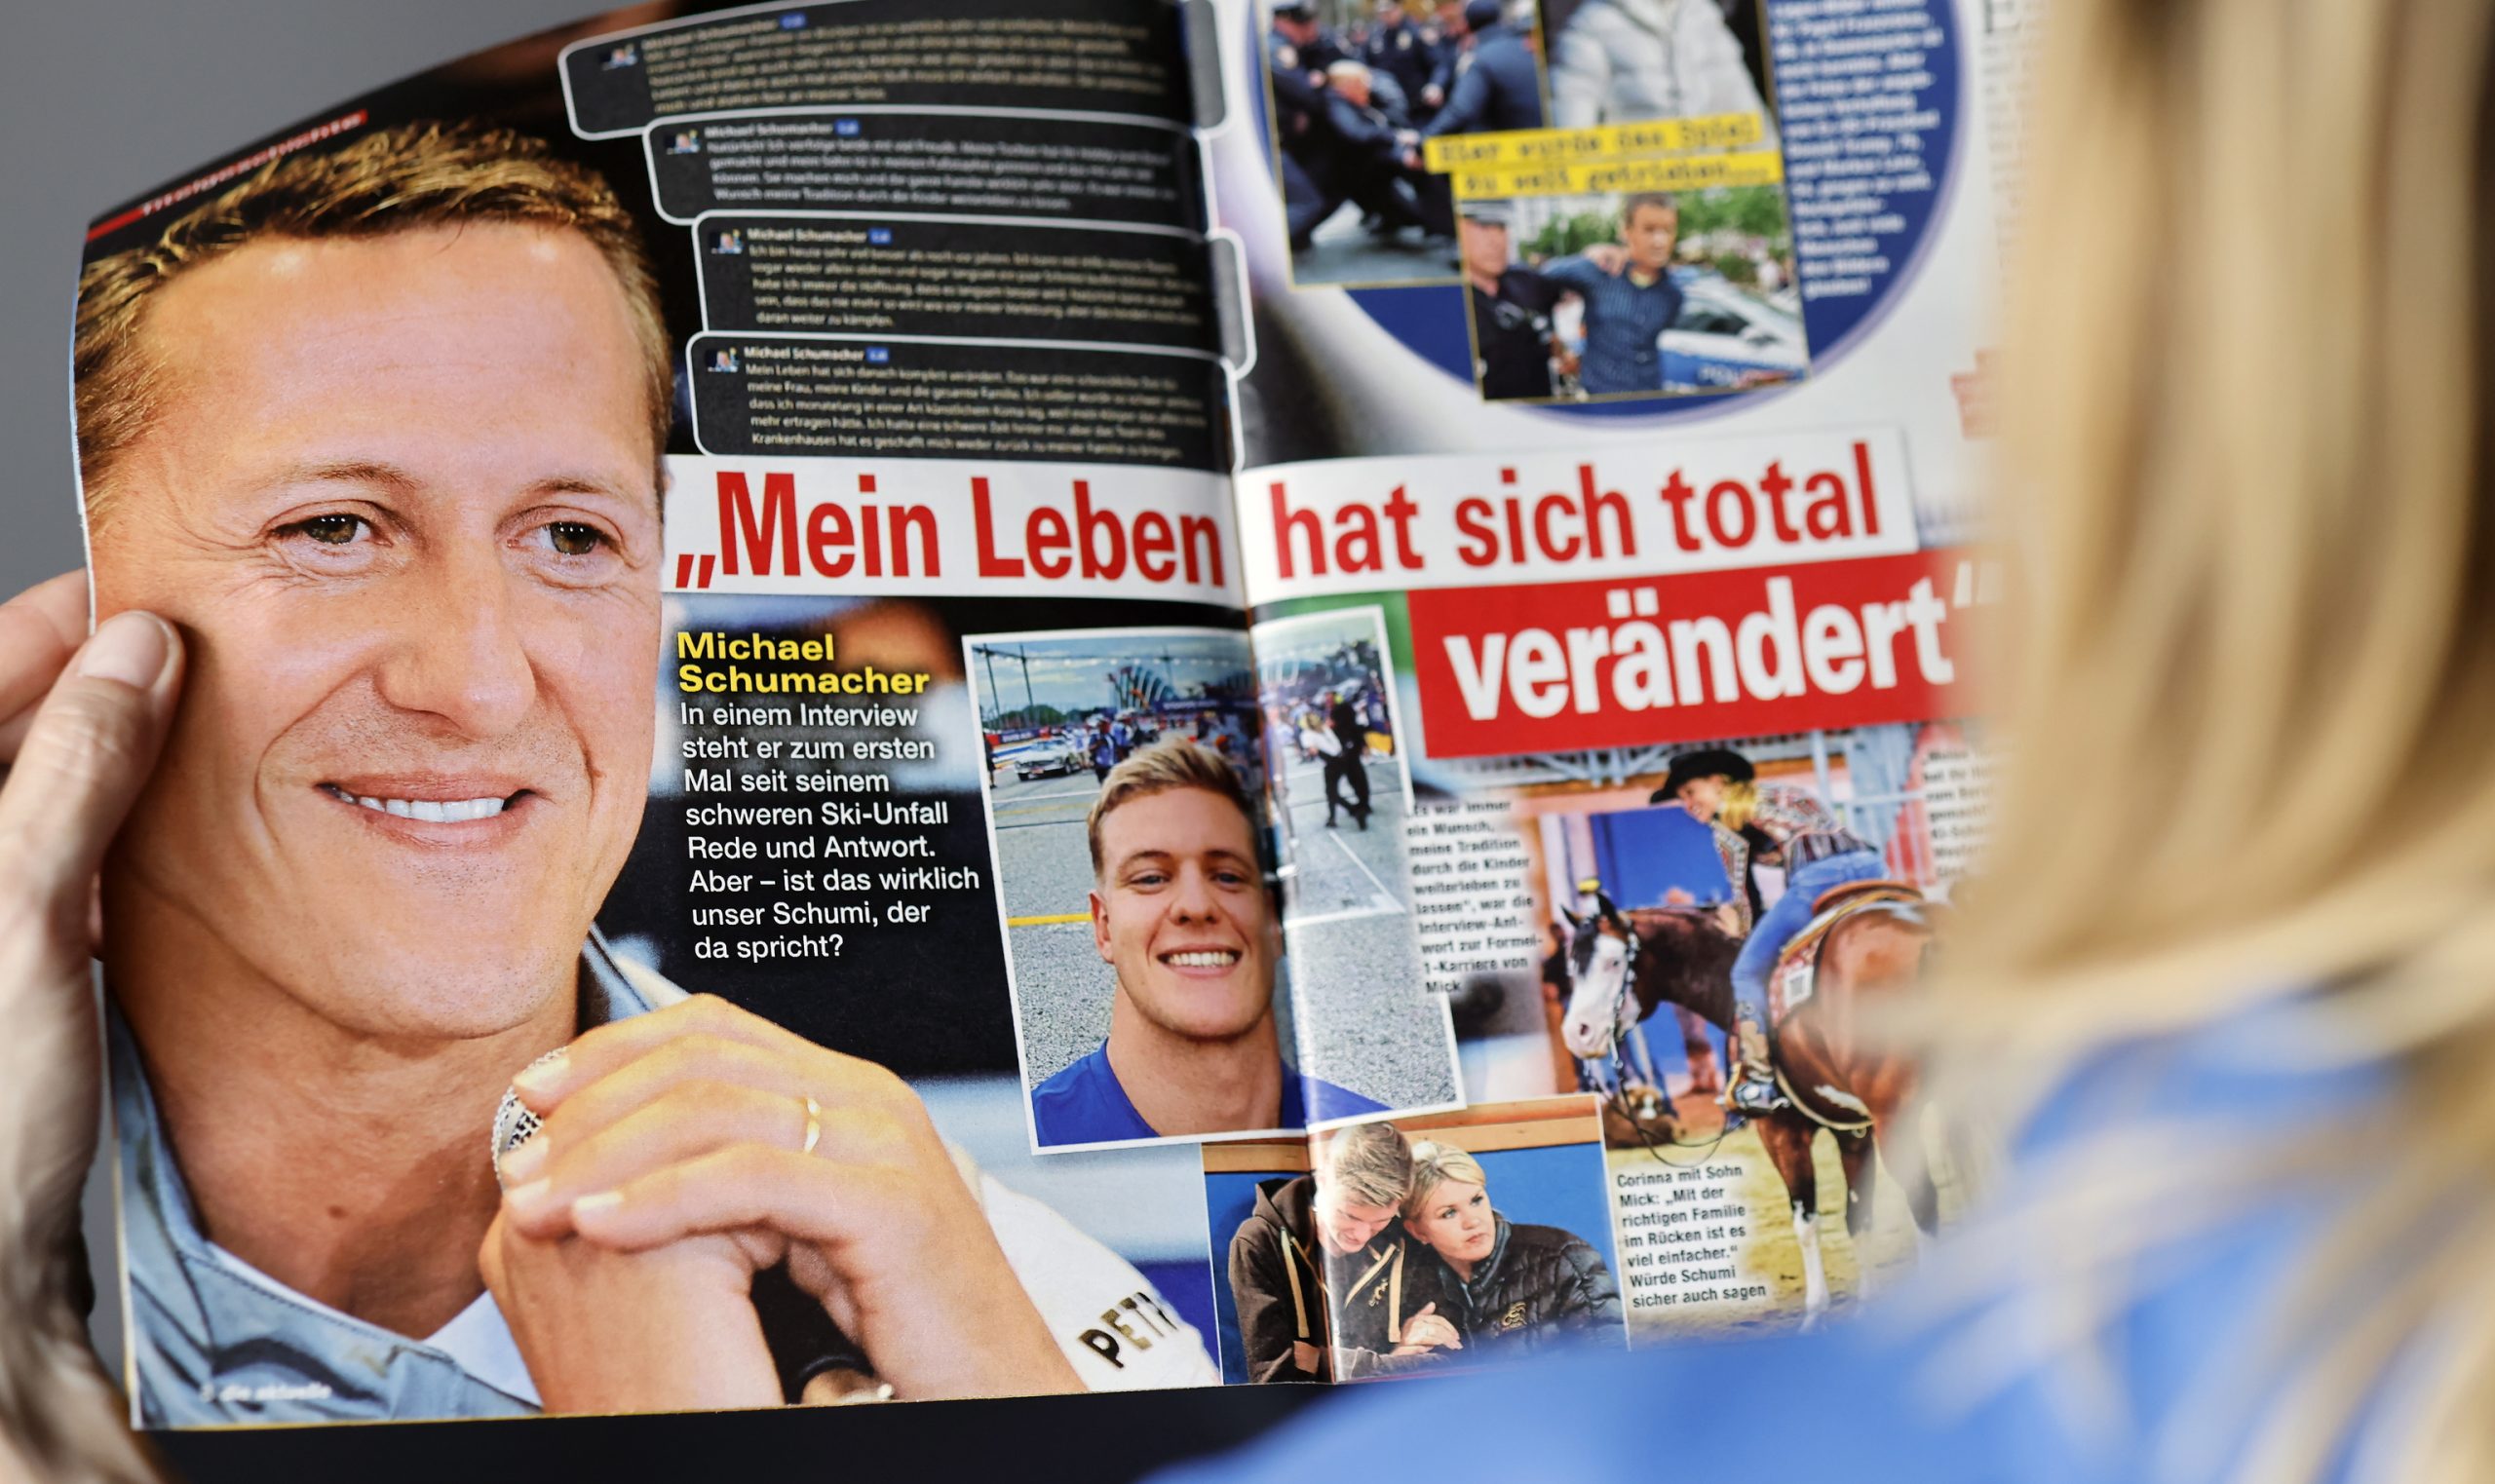 Destituyen a la directora de la revista que publicó la falsa entrevista con Michael Schumacher